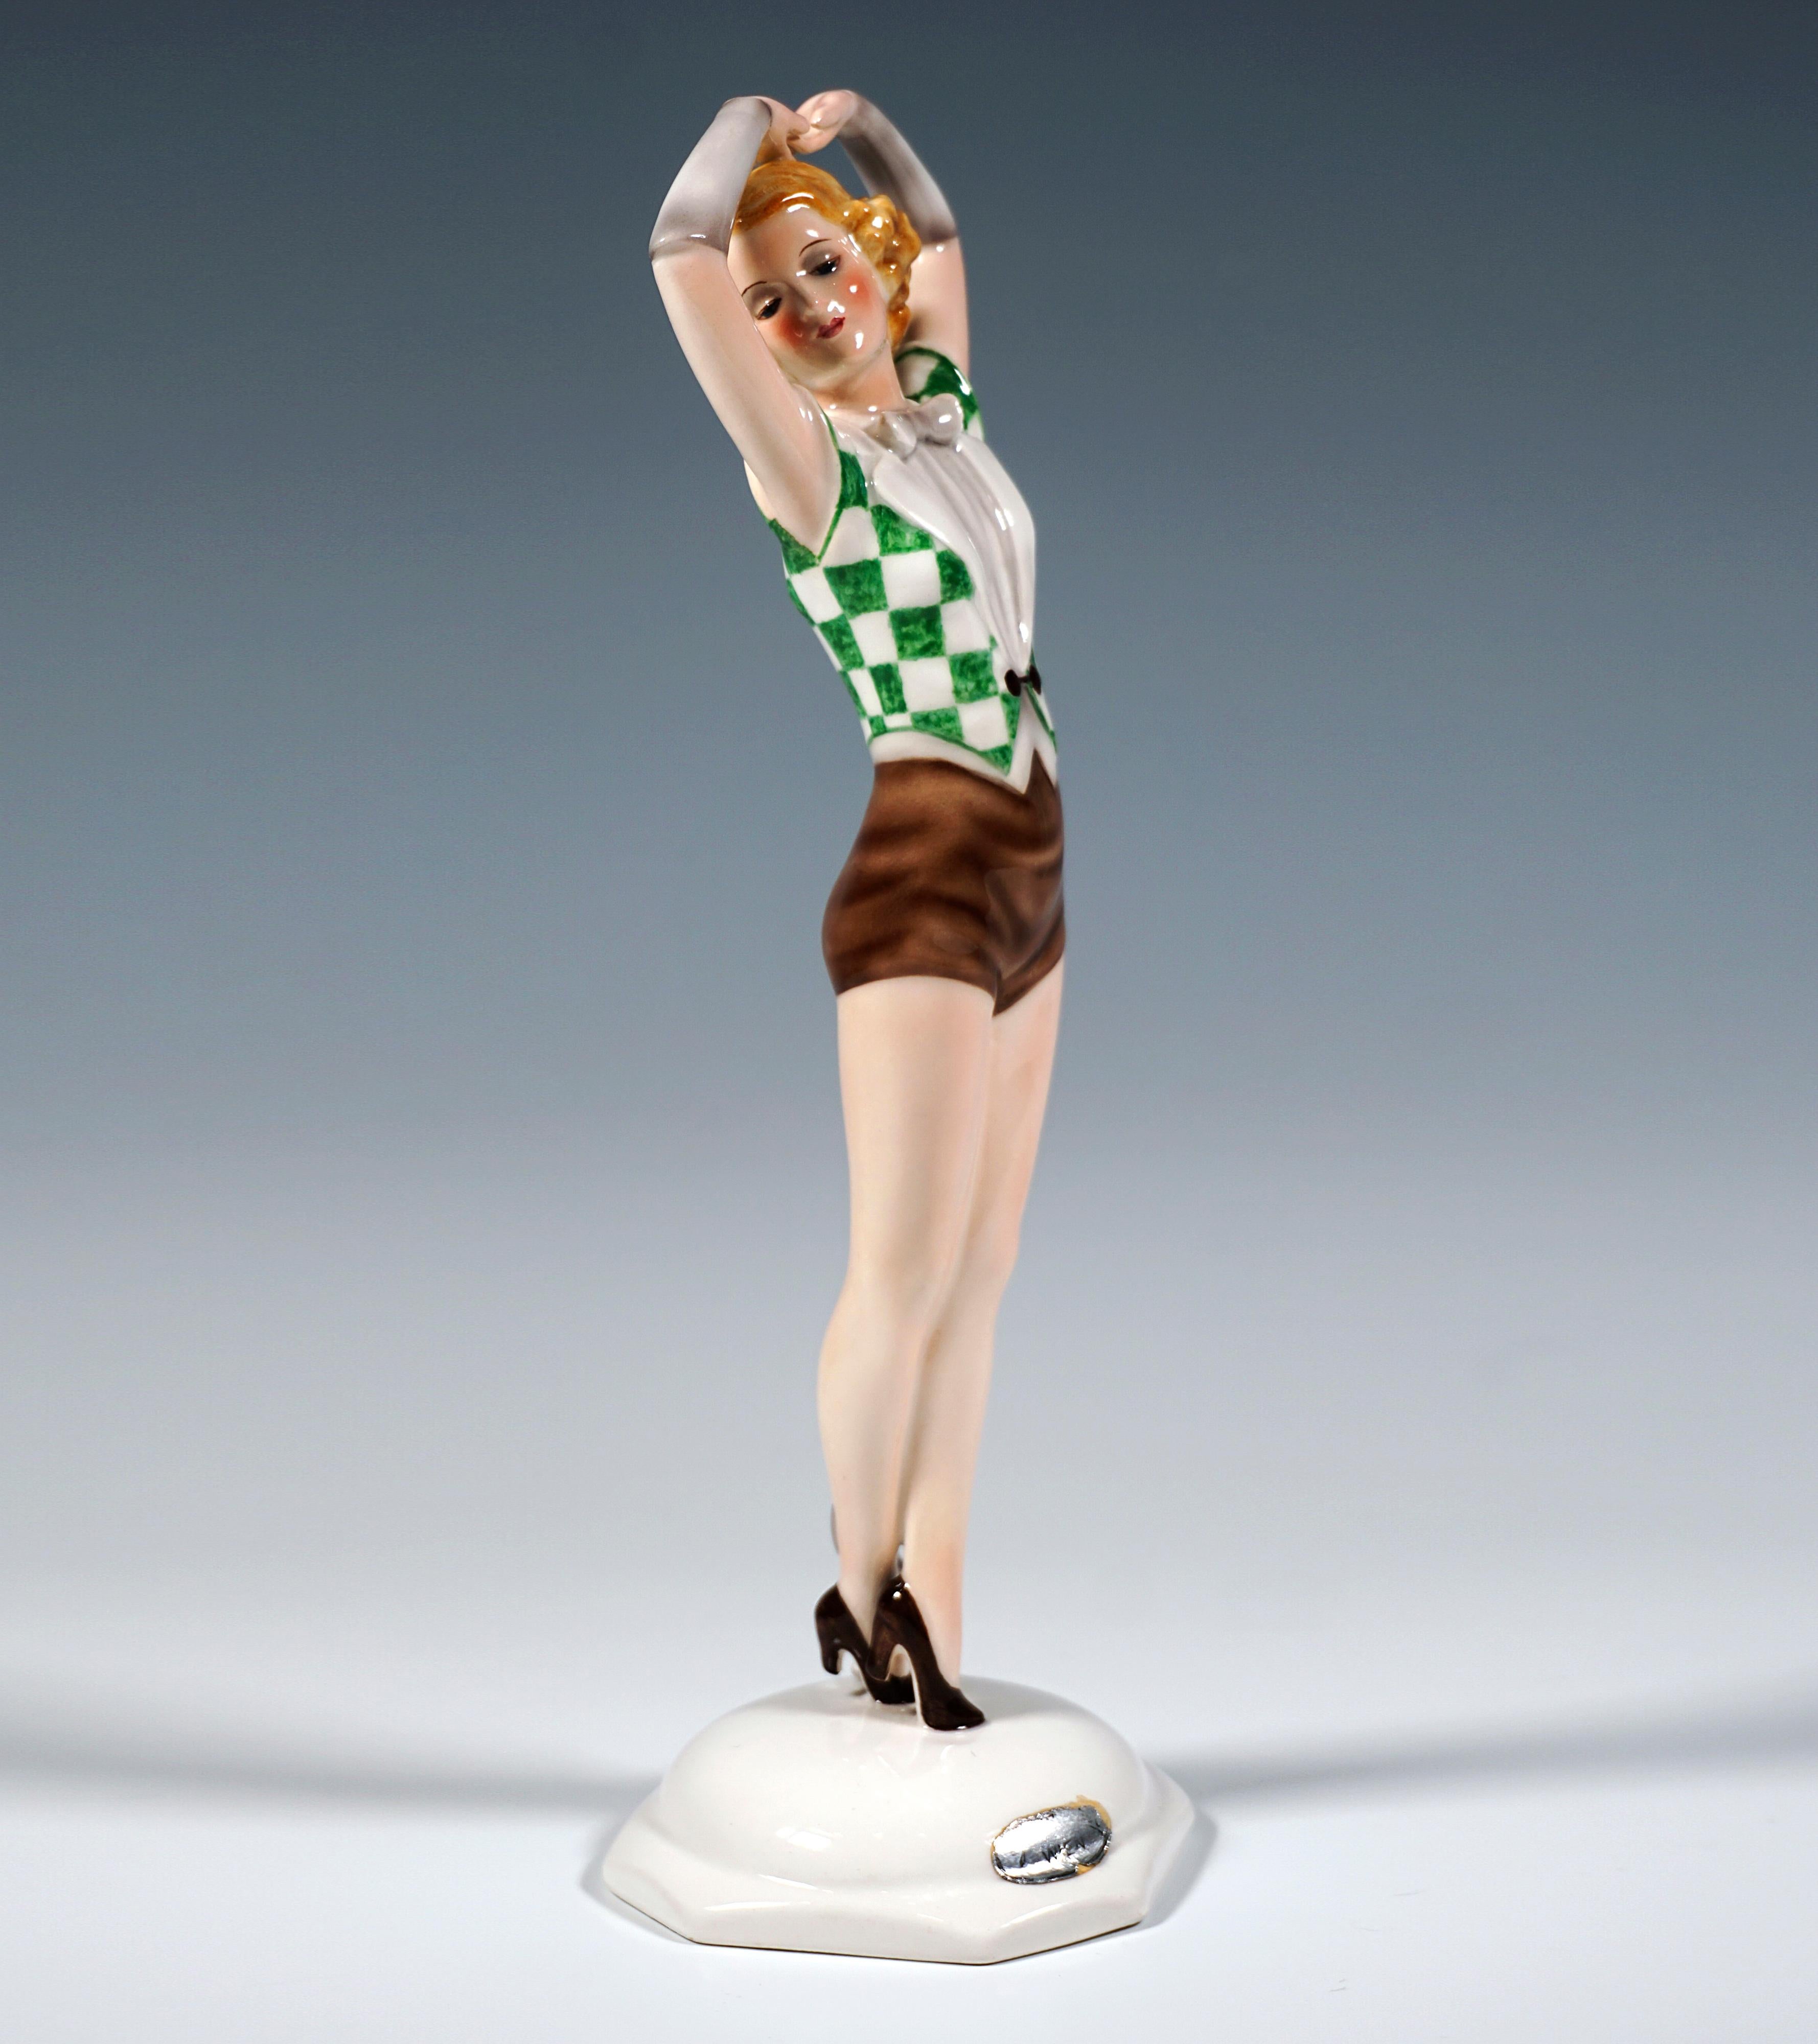 Sehr seltene und außergewöhnliche Goldscheider Wien Keramik Figur aus den 1930er Jahren:
Eine junge Tänzerin mit kinnlangem, lockigem, blondem Haar, die auf den Spitzen ihrer Absätze steht, kurze braune Hosen und eine grün-weiß karierte ärmellose